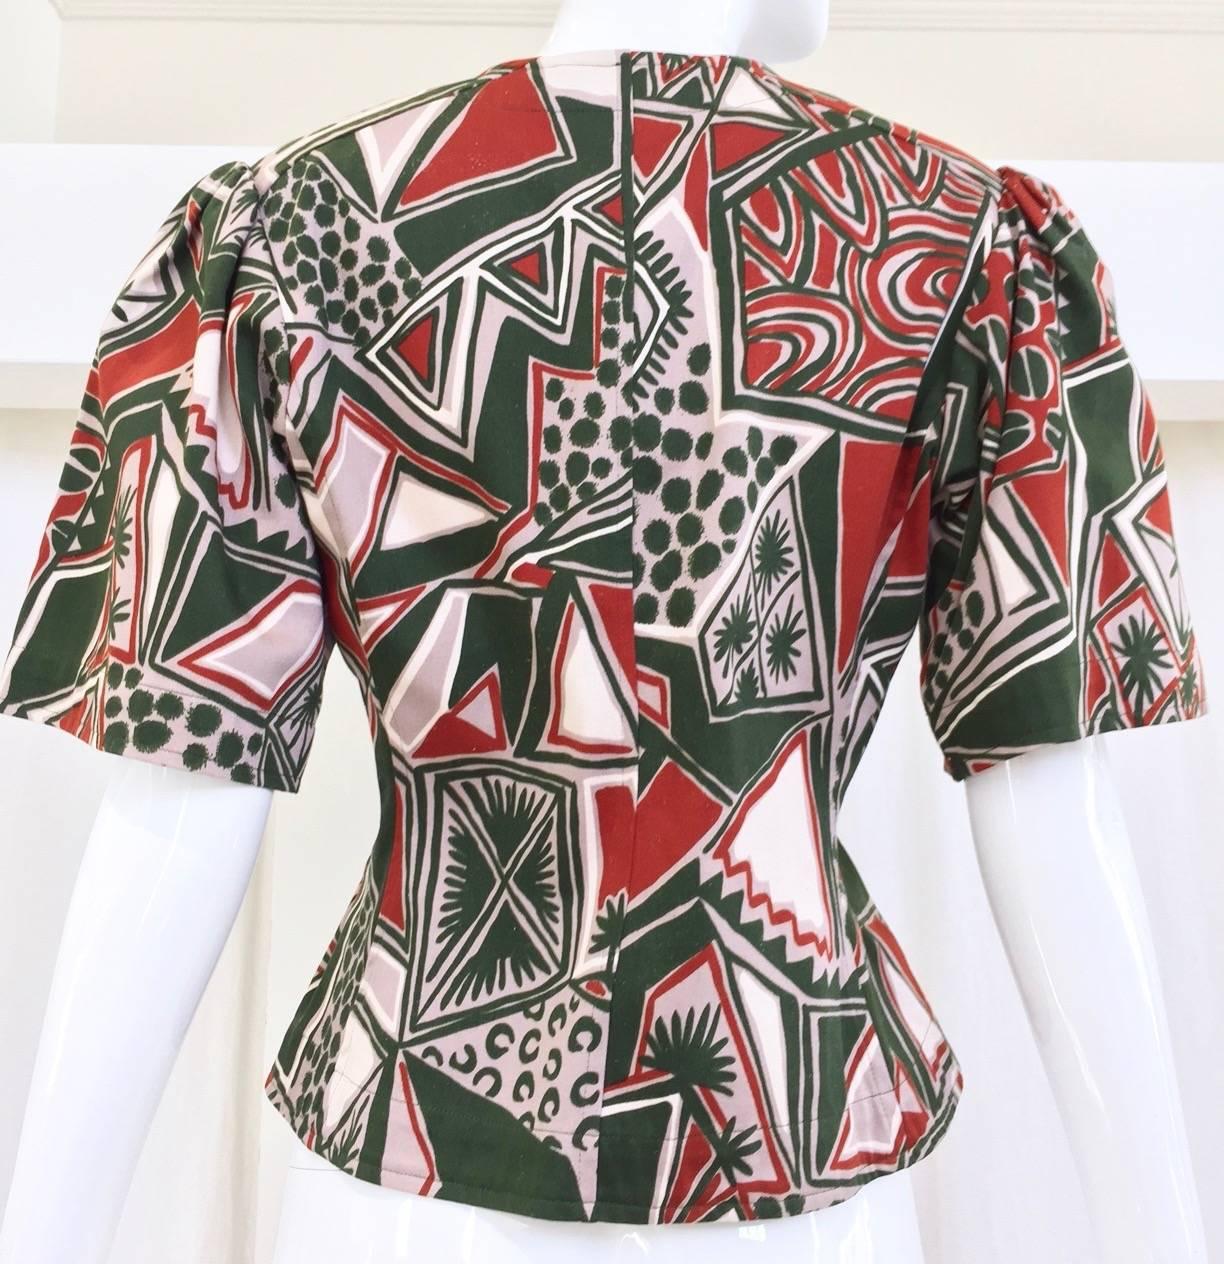 80s Yves Saint Laurent cotton print blouse.
Bust: 34